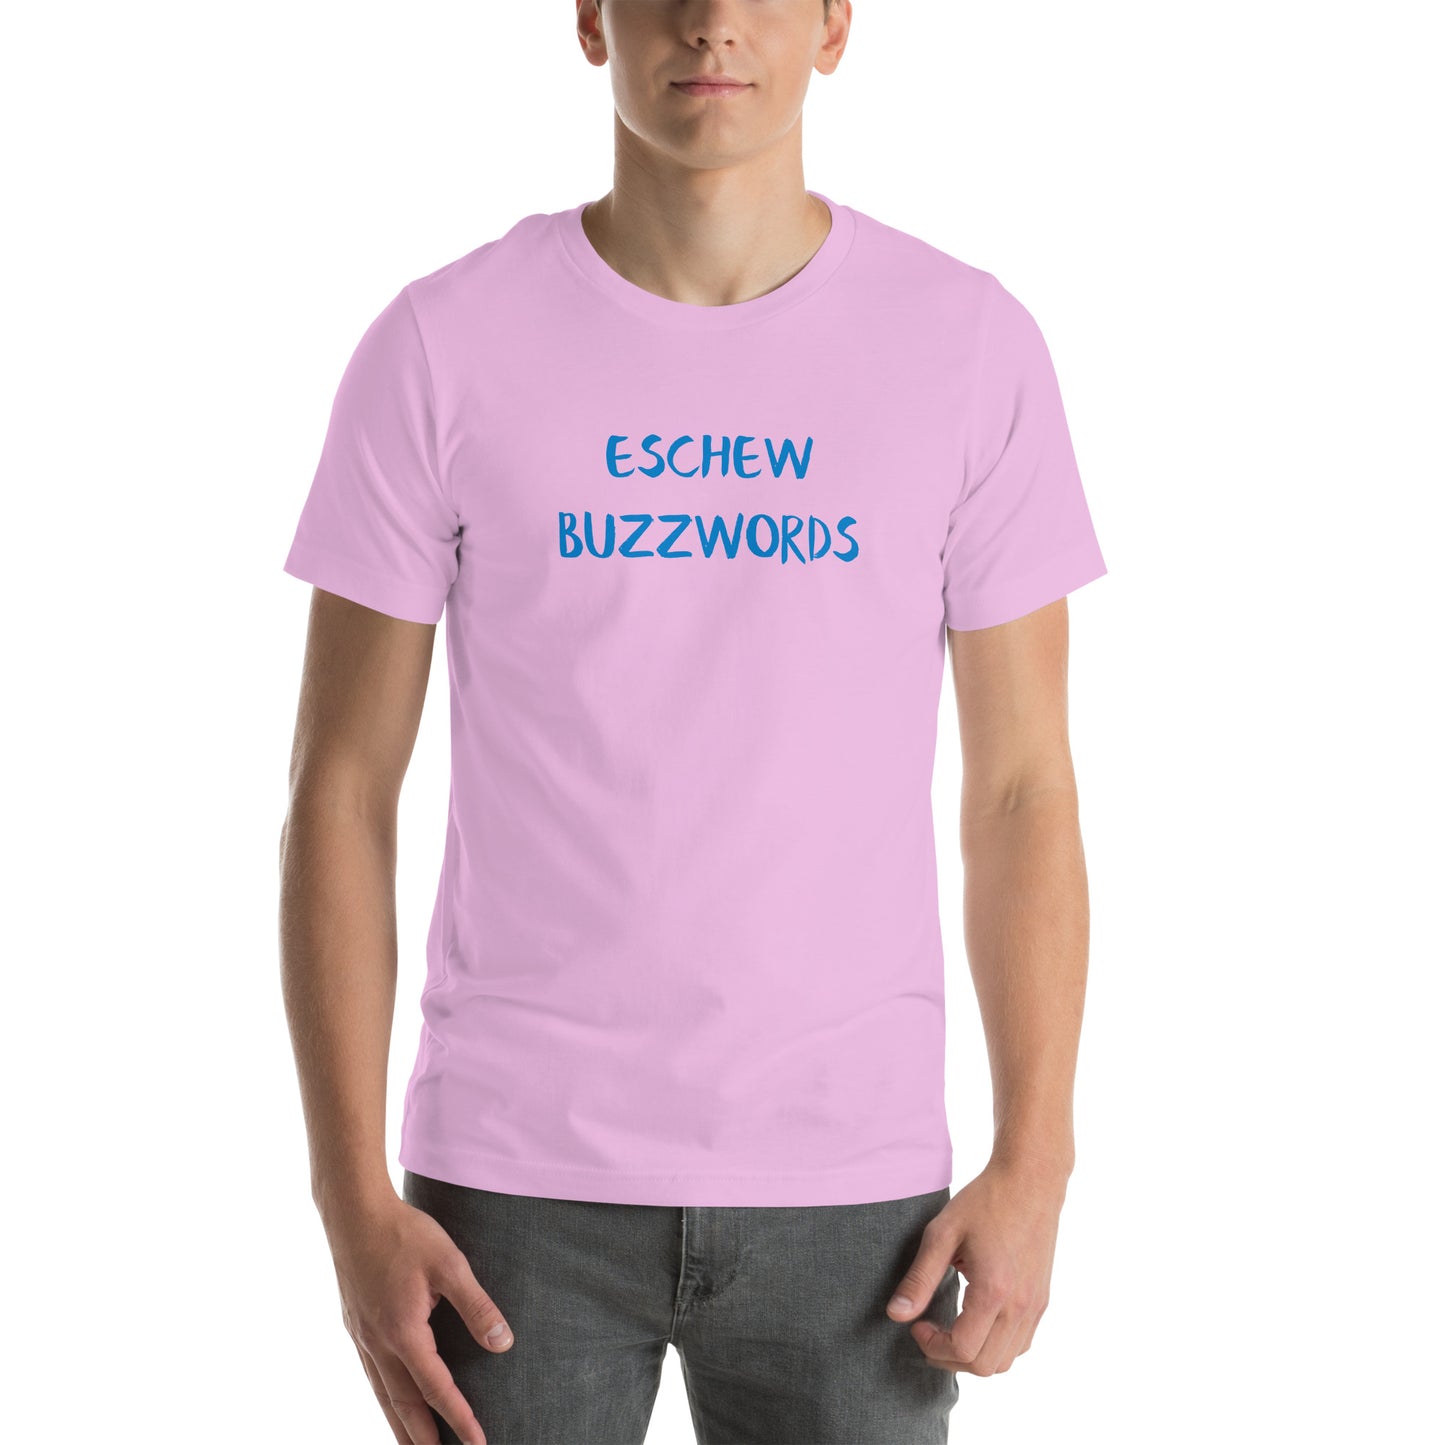 eschew buzzwords unisex t-shirt